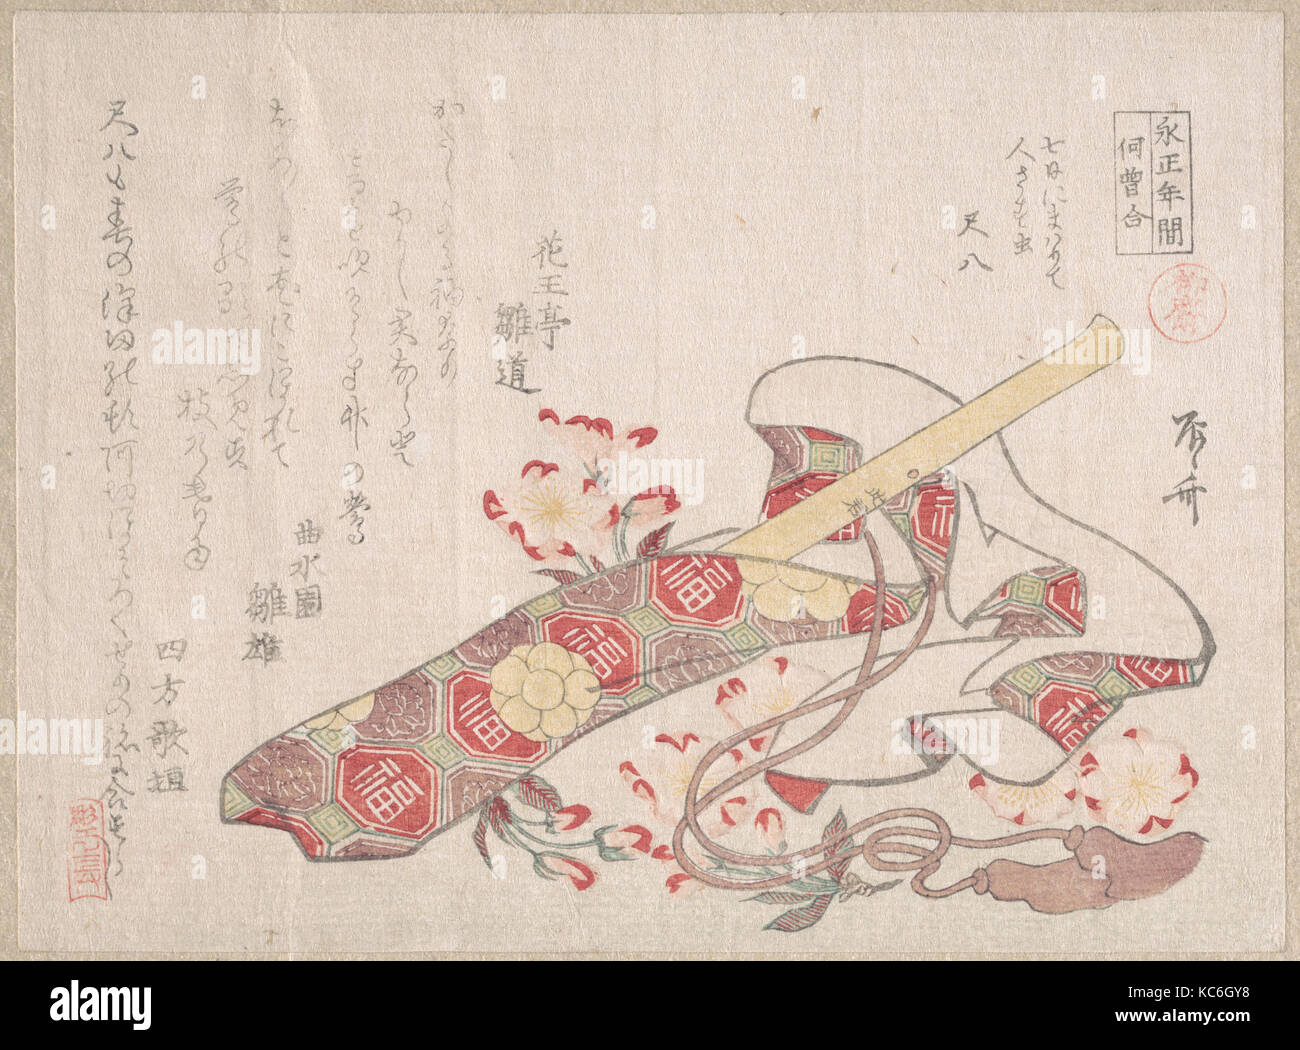 El shakuhachi (una especie de flauta de bambú), con su tapa y flores de cerezo, Ryūryūkyo Shinsai, del siglo XIX. Foto de stock